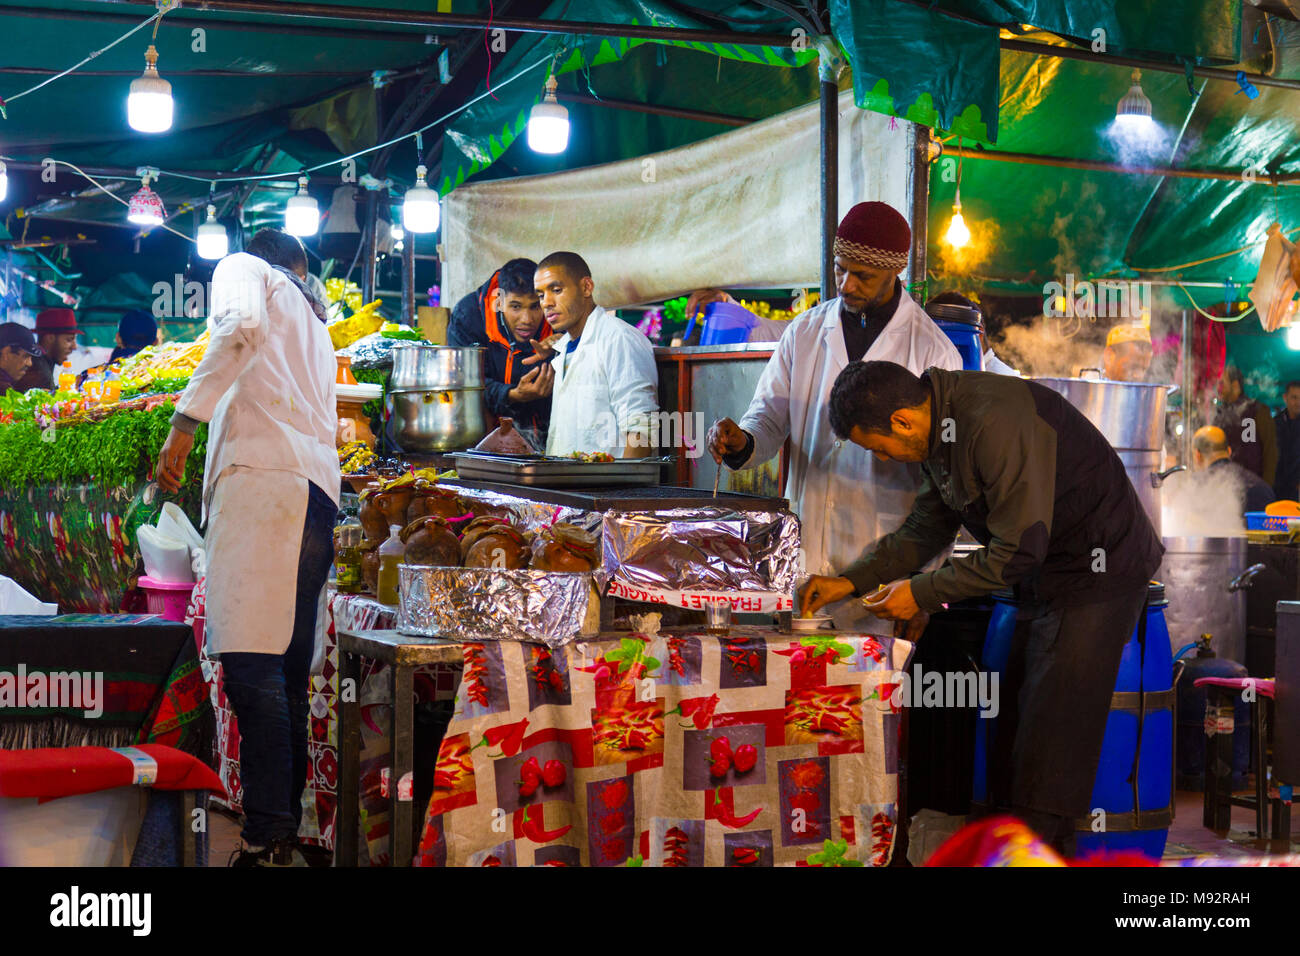 Chefs de cuisine dans un stand au marché de la place Djemaa el-Fna dans la médina de Marrakech, Maroc Banque D'Images